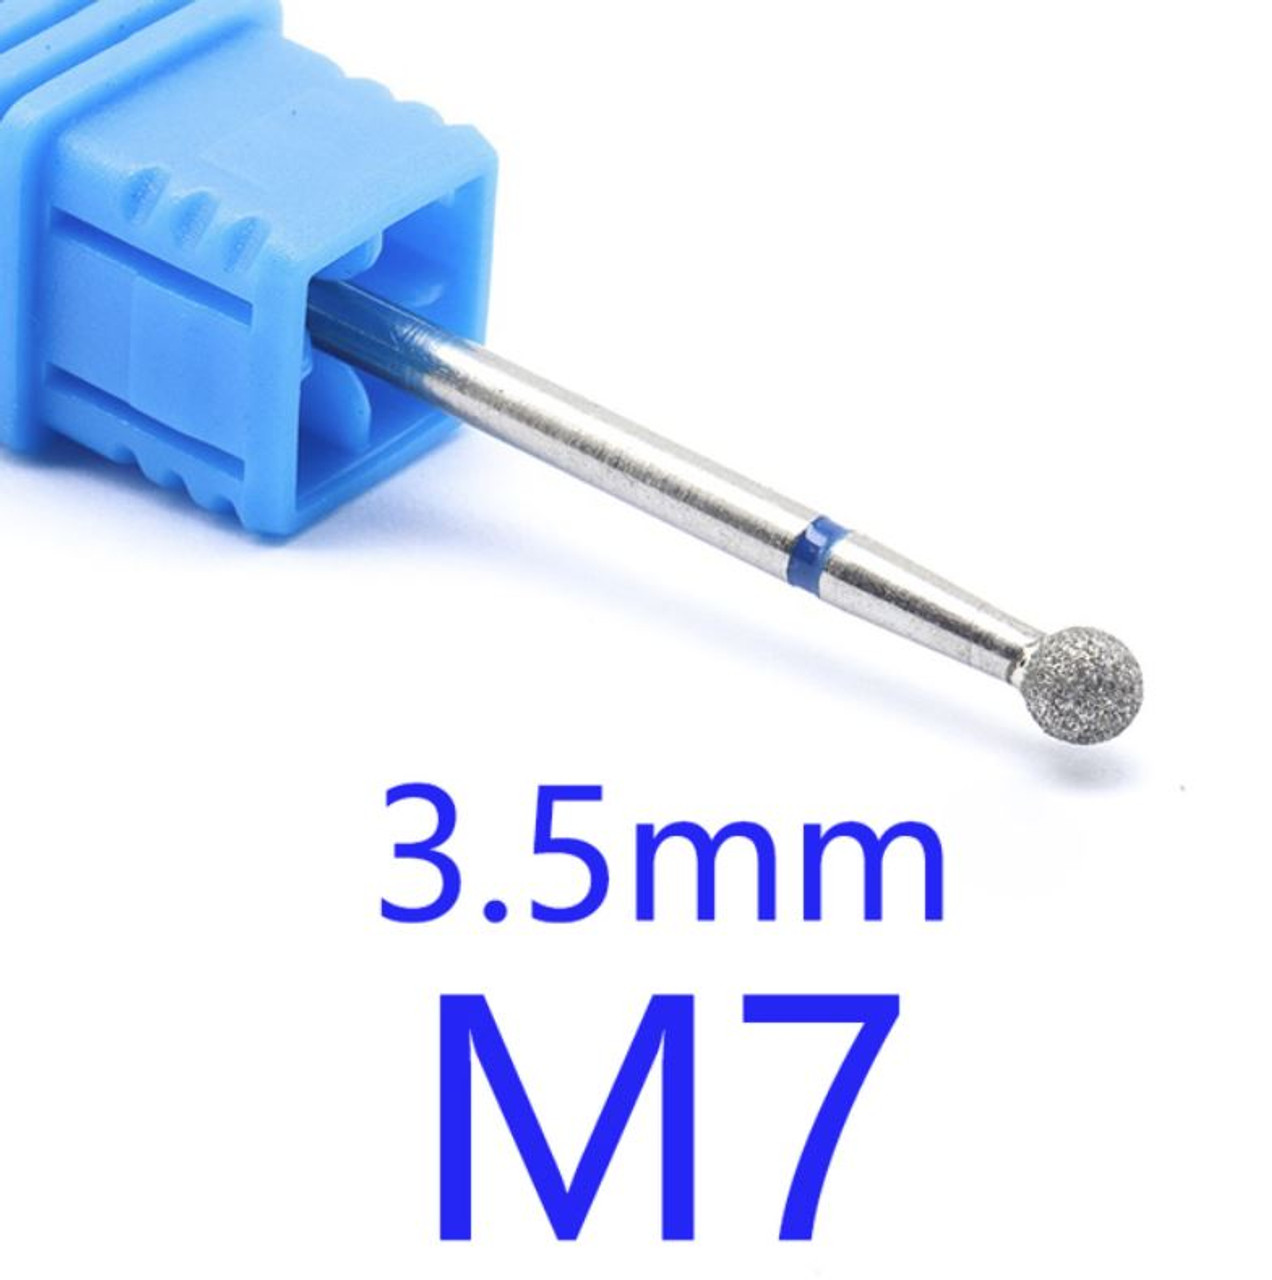 NDi beauty Diamond Drill Bit - 3/32 shank (MEDIUM) - M7